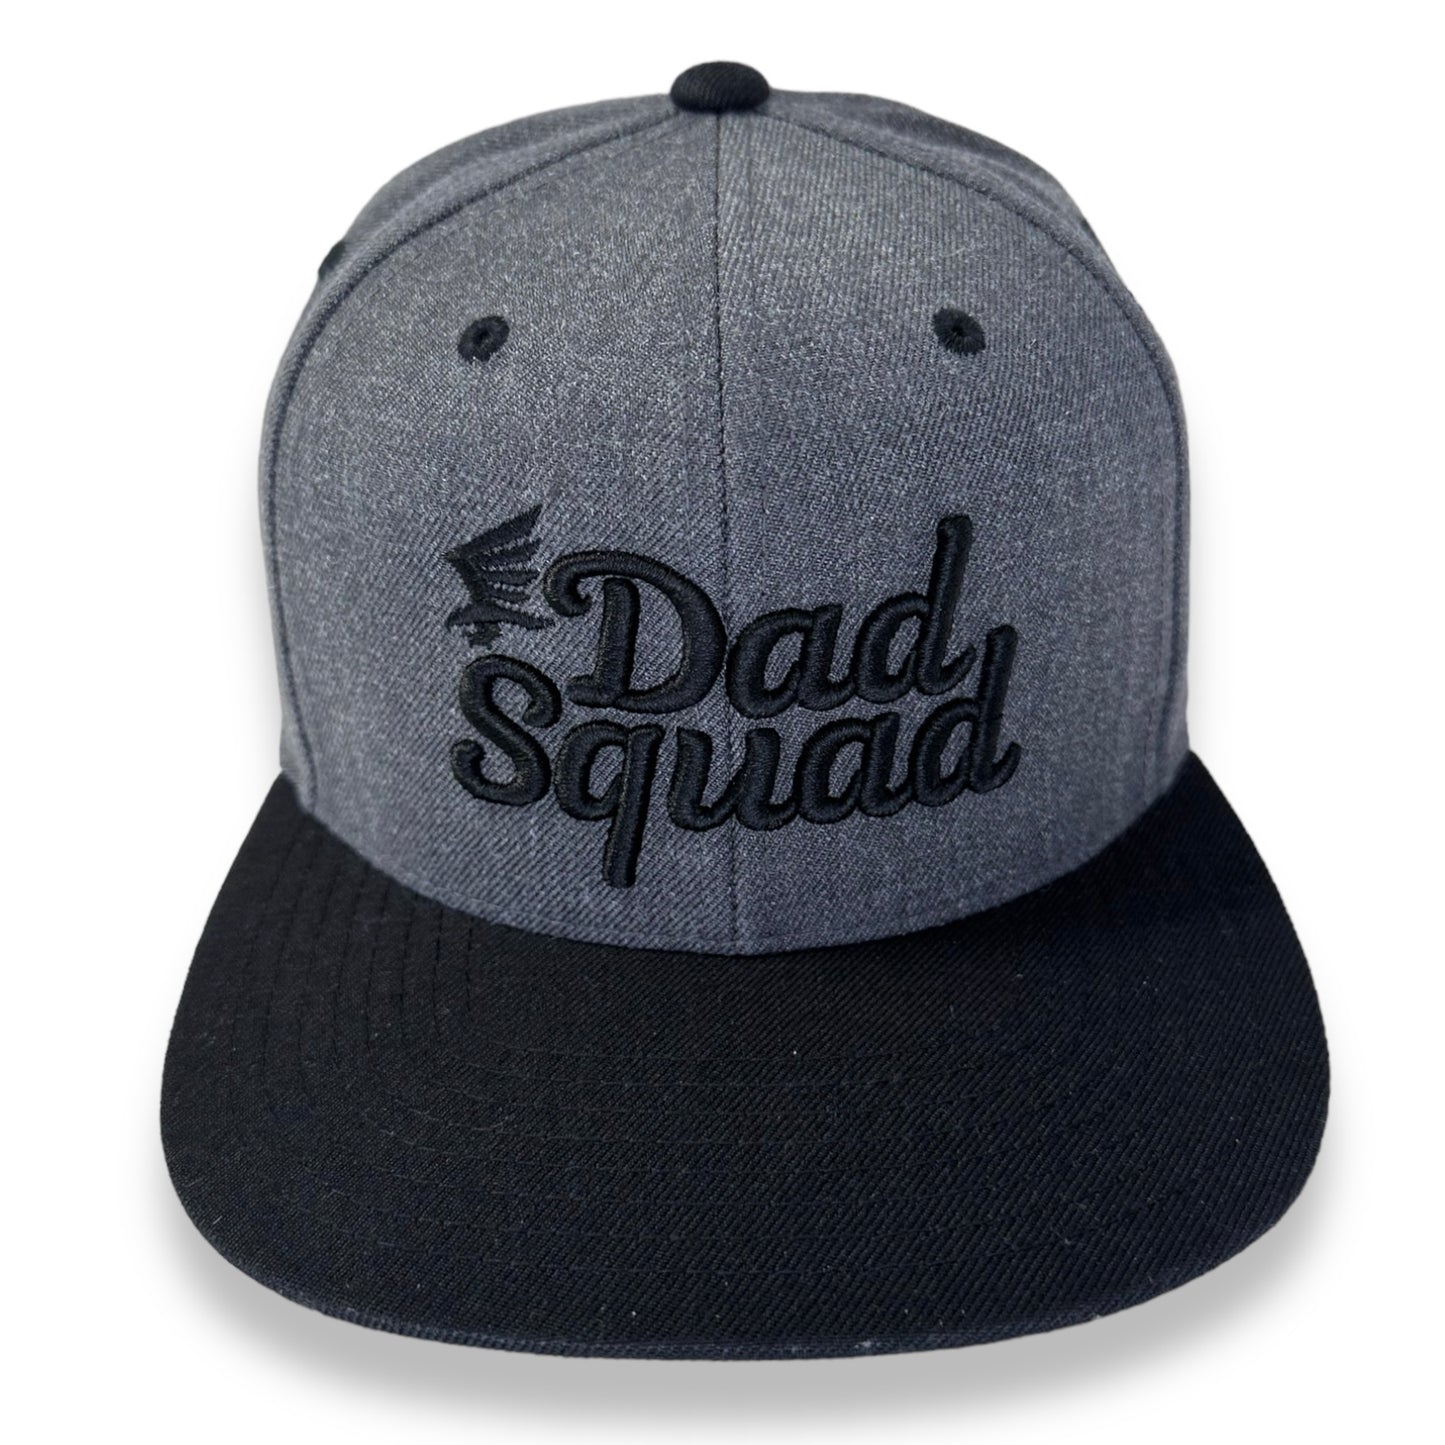 Dad Squad Flat Bill Hat - Charcoal/Black